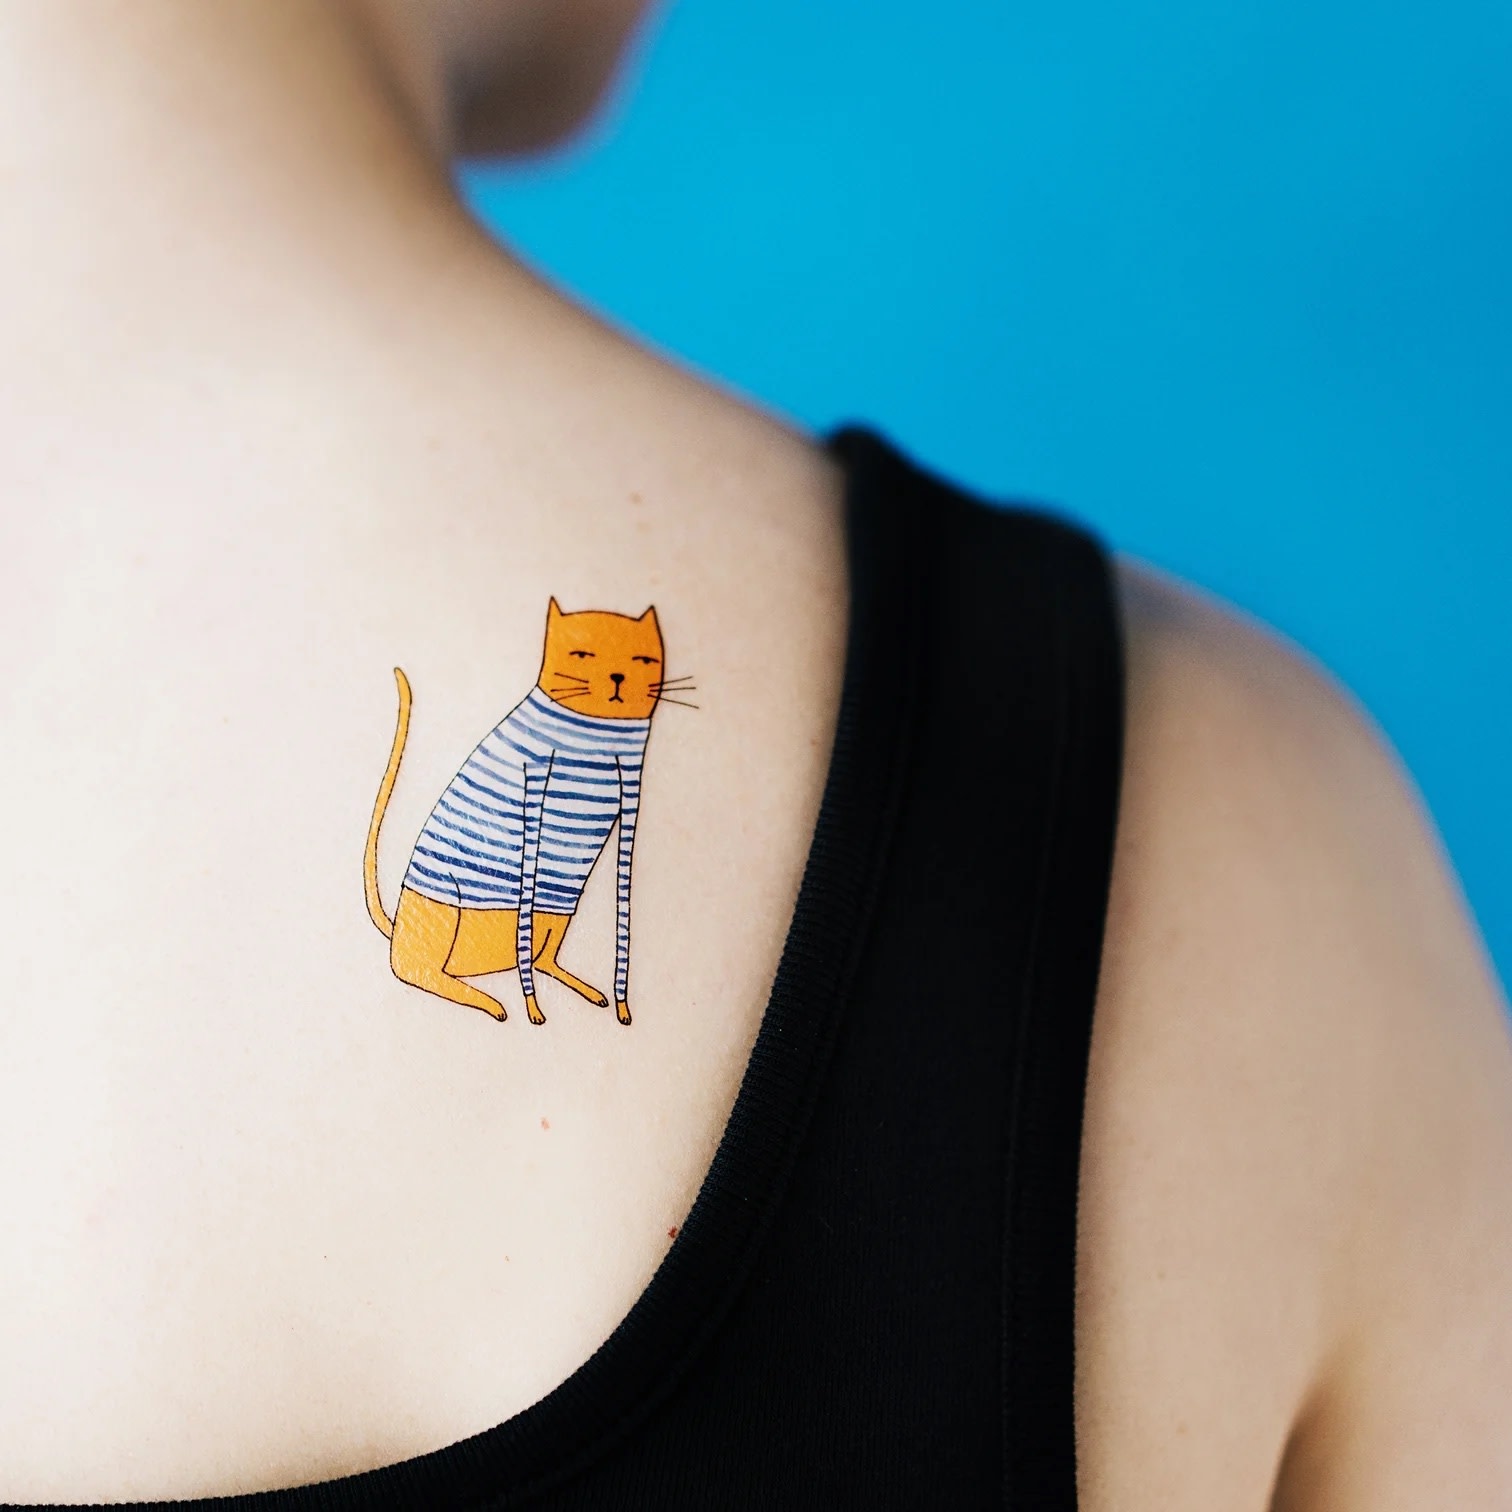 Siamese Cat tattoo by Tattooist Yeono | Post 32127